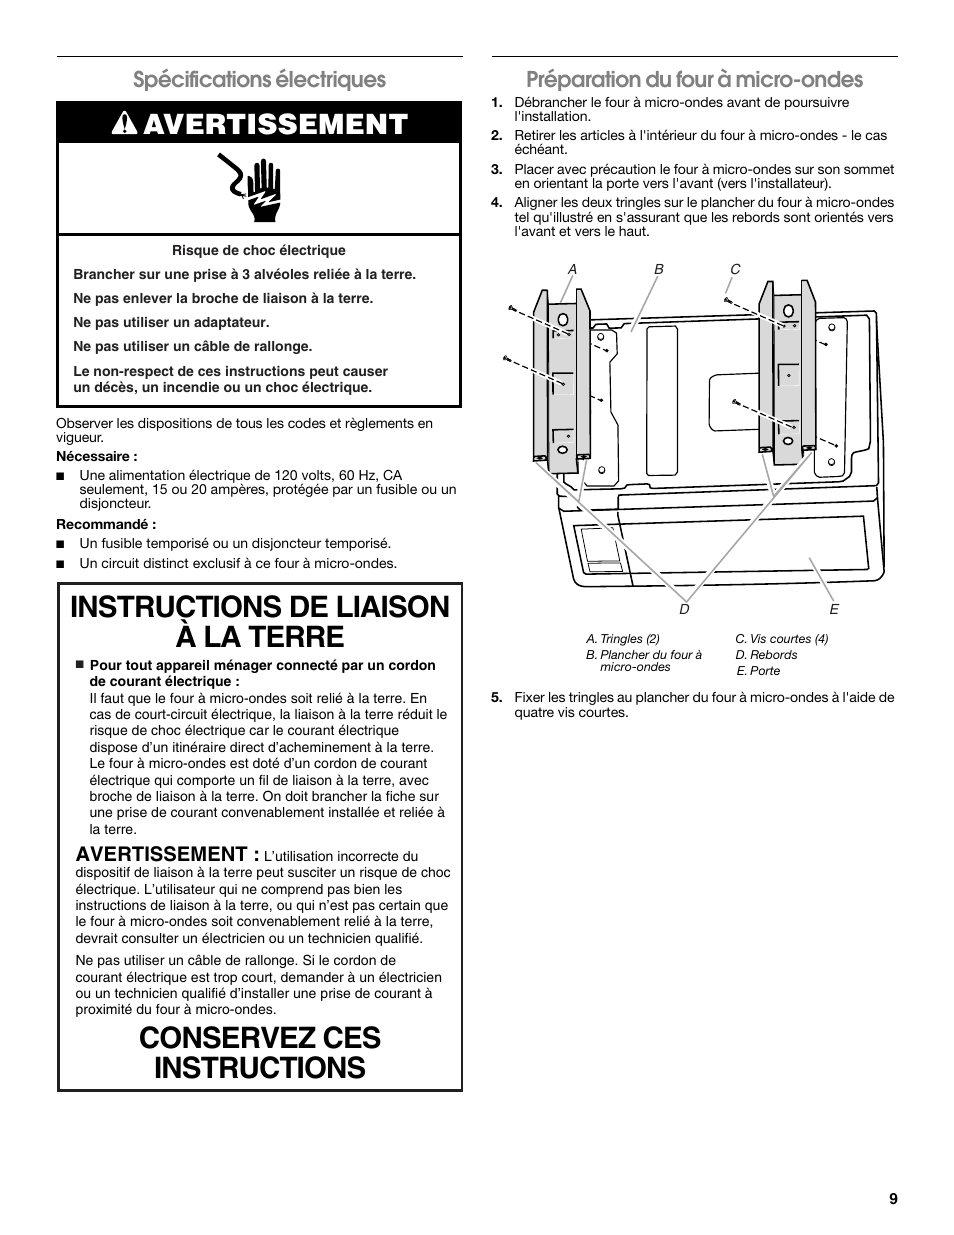 Avertissement, Spécifications électriques, Préparation du four à micro-ondes | Whirlpool MK2160AB Manuel d'utilisation | Page 9 / 12